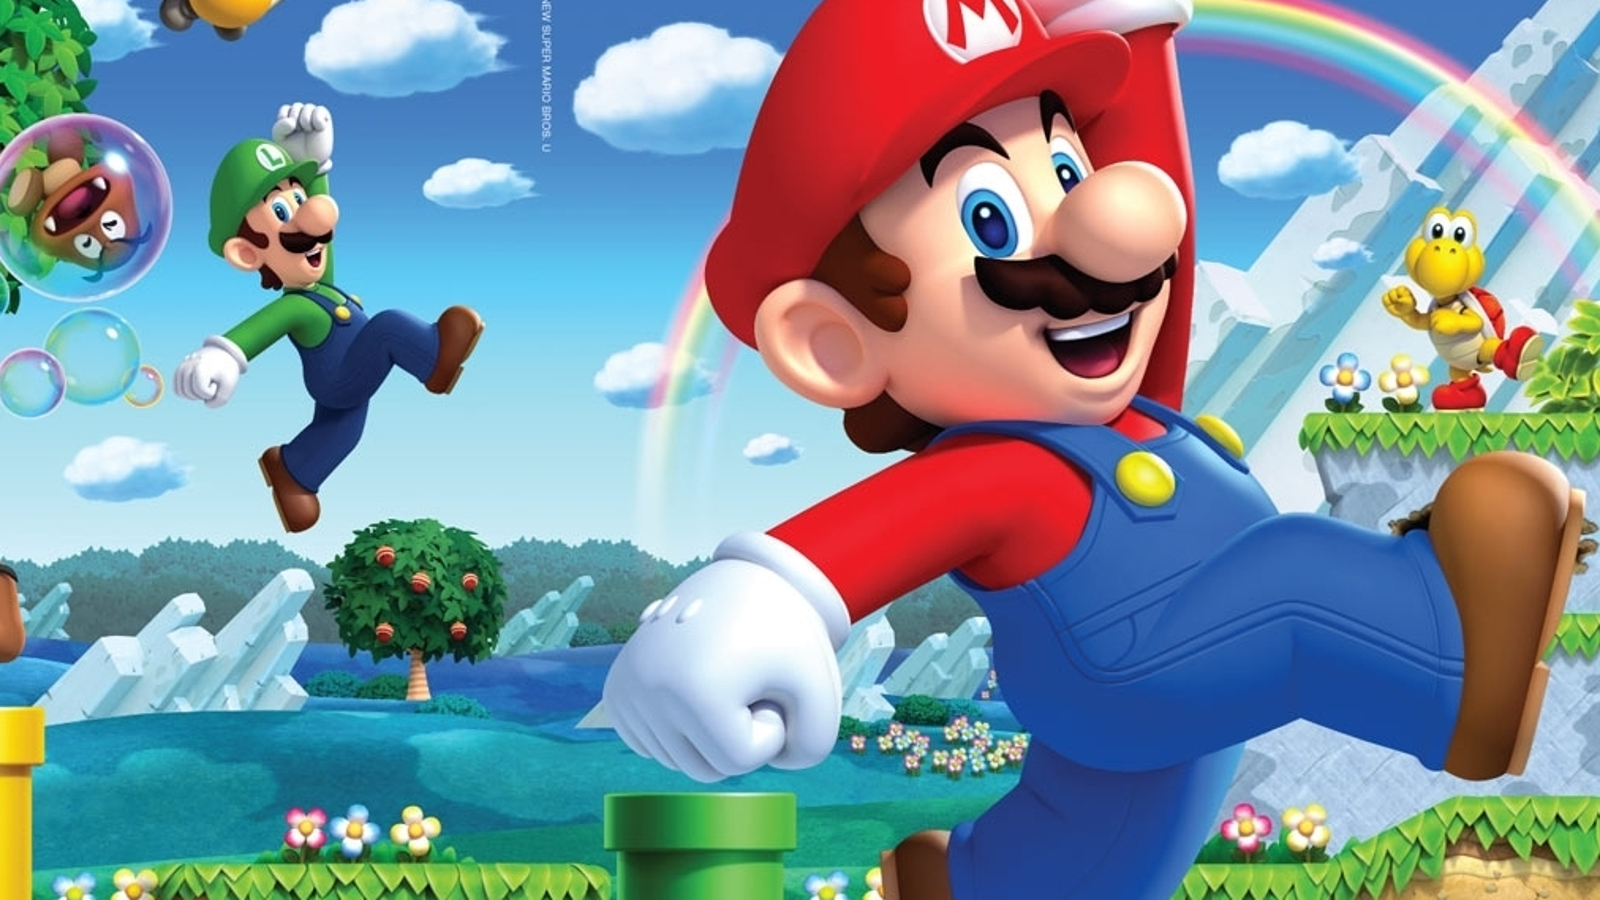 Motel confesar envío Trucos New Super Mario Bros. U | Eurogamer.es